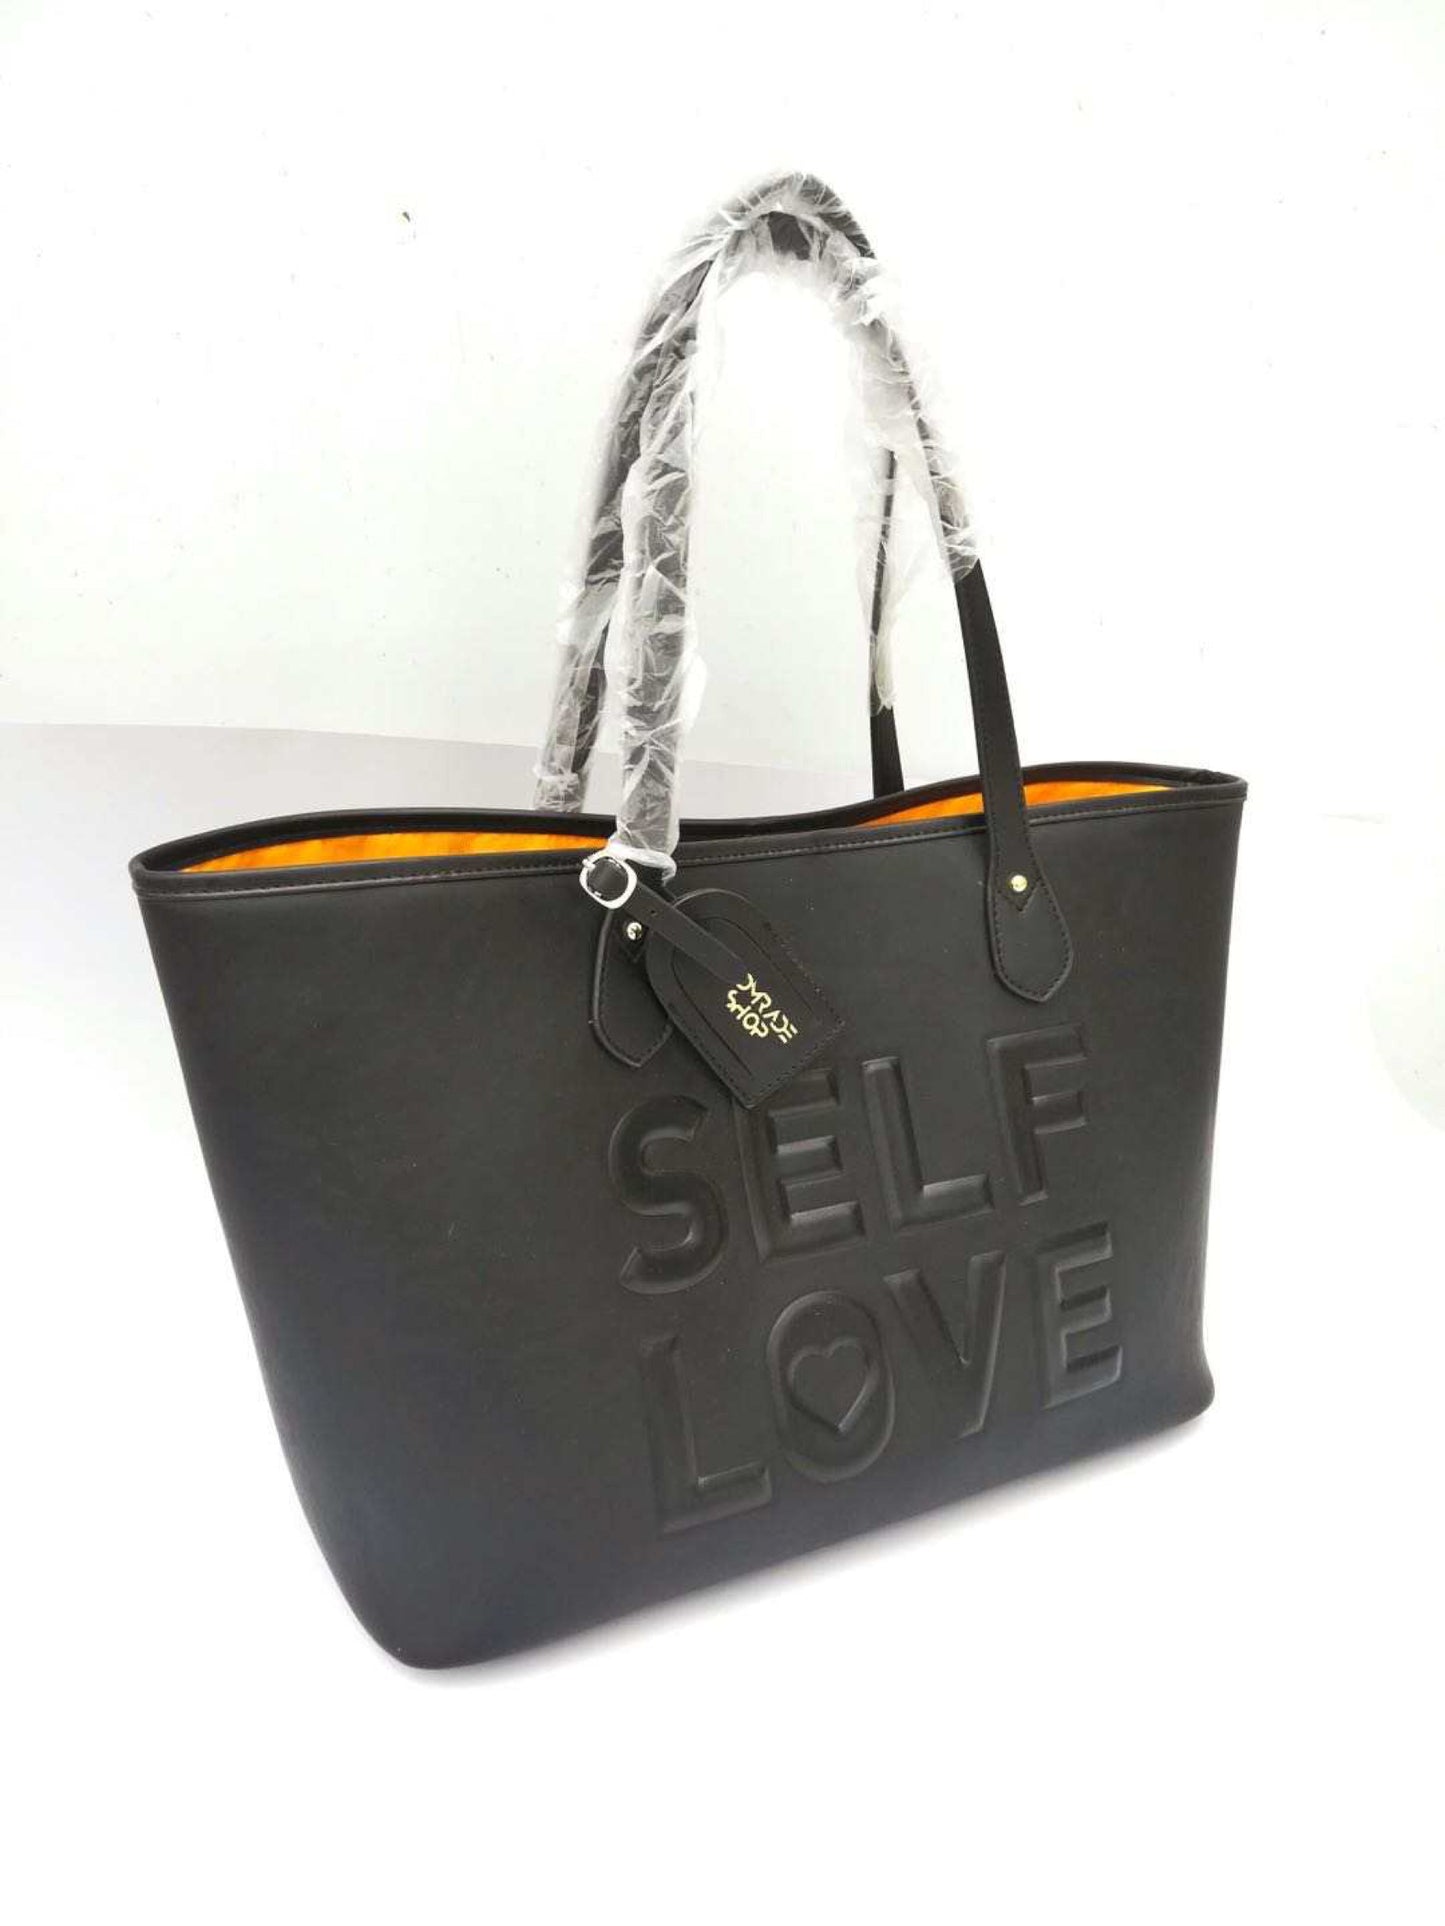 Signature 'SELF LOVE' Tote Bag